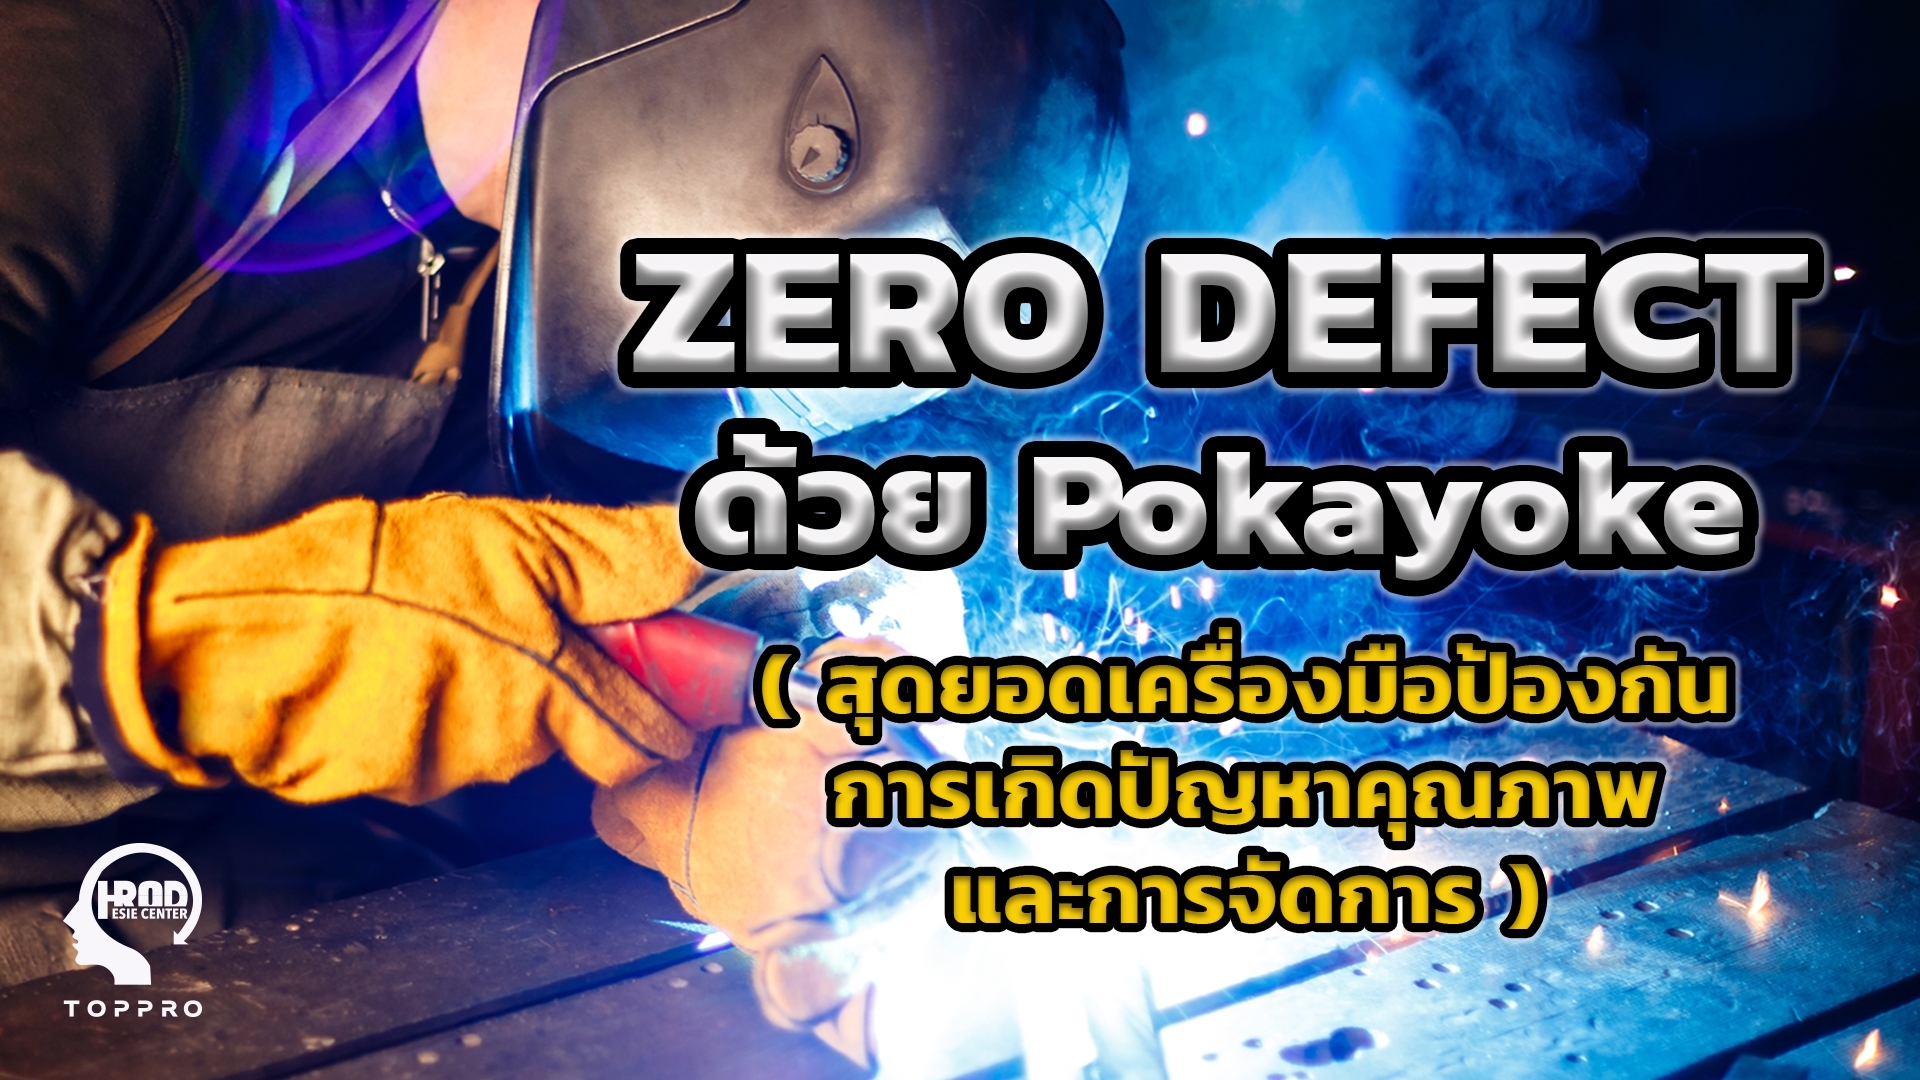 Zero Defect ด้วย Pokayoke (สุดยอดเครื่องมือป้องกัน การเกิดปัญหาคุณภาพและการจัดการ)